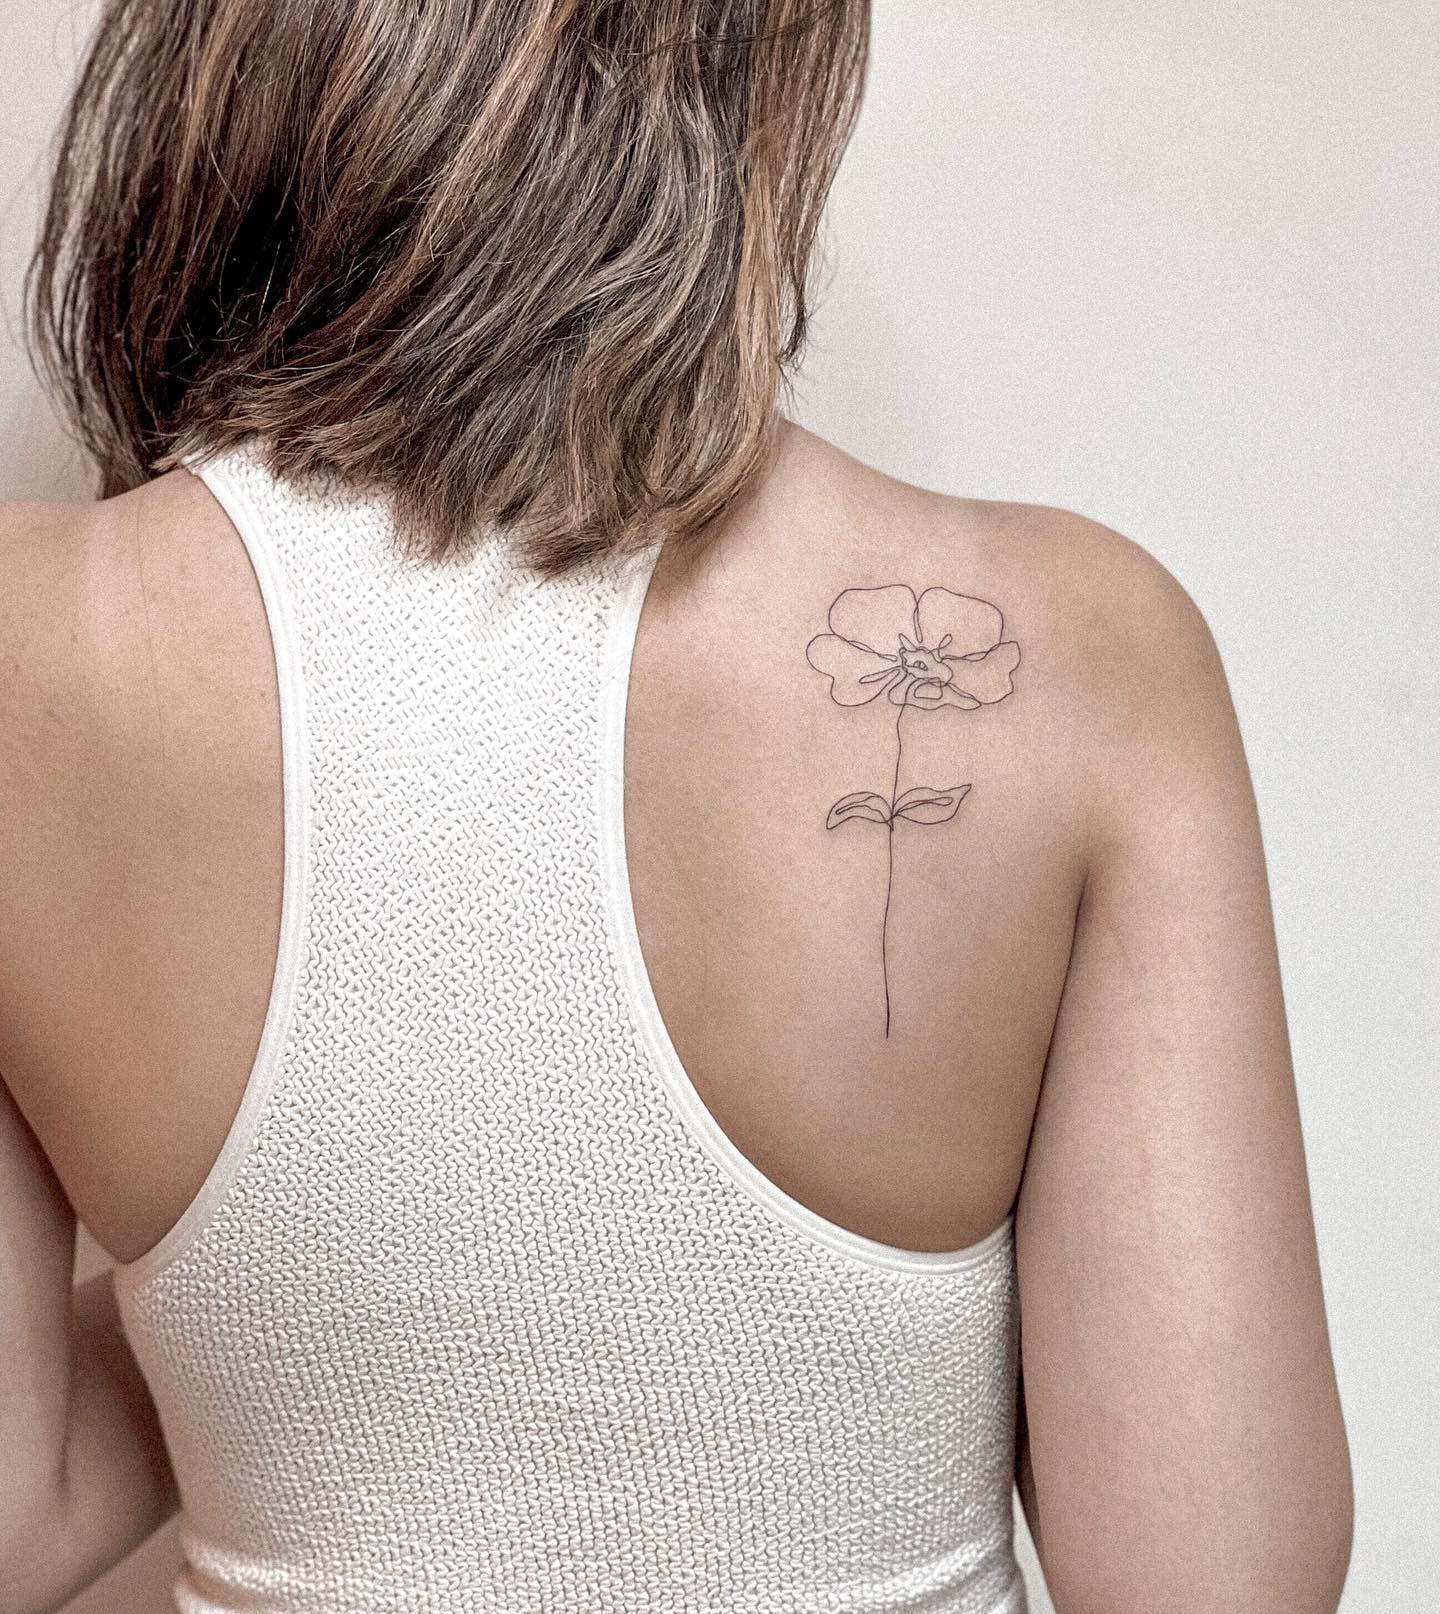 Tatuaje pequeño de flor en la espalda para mujeres.